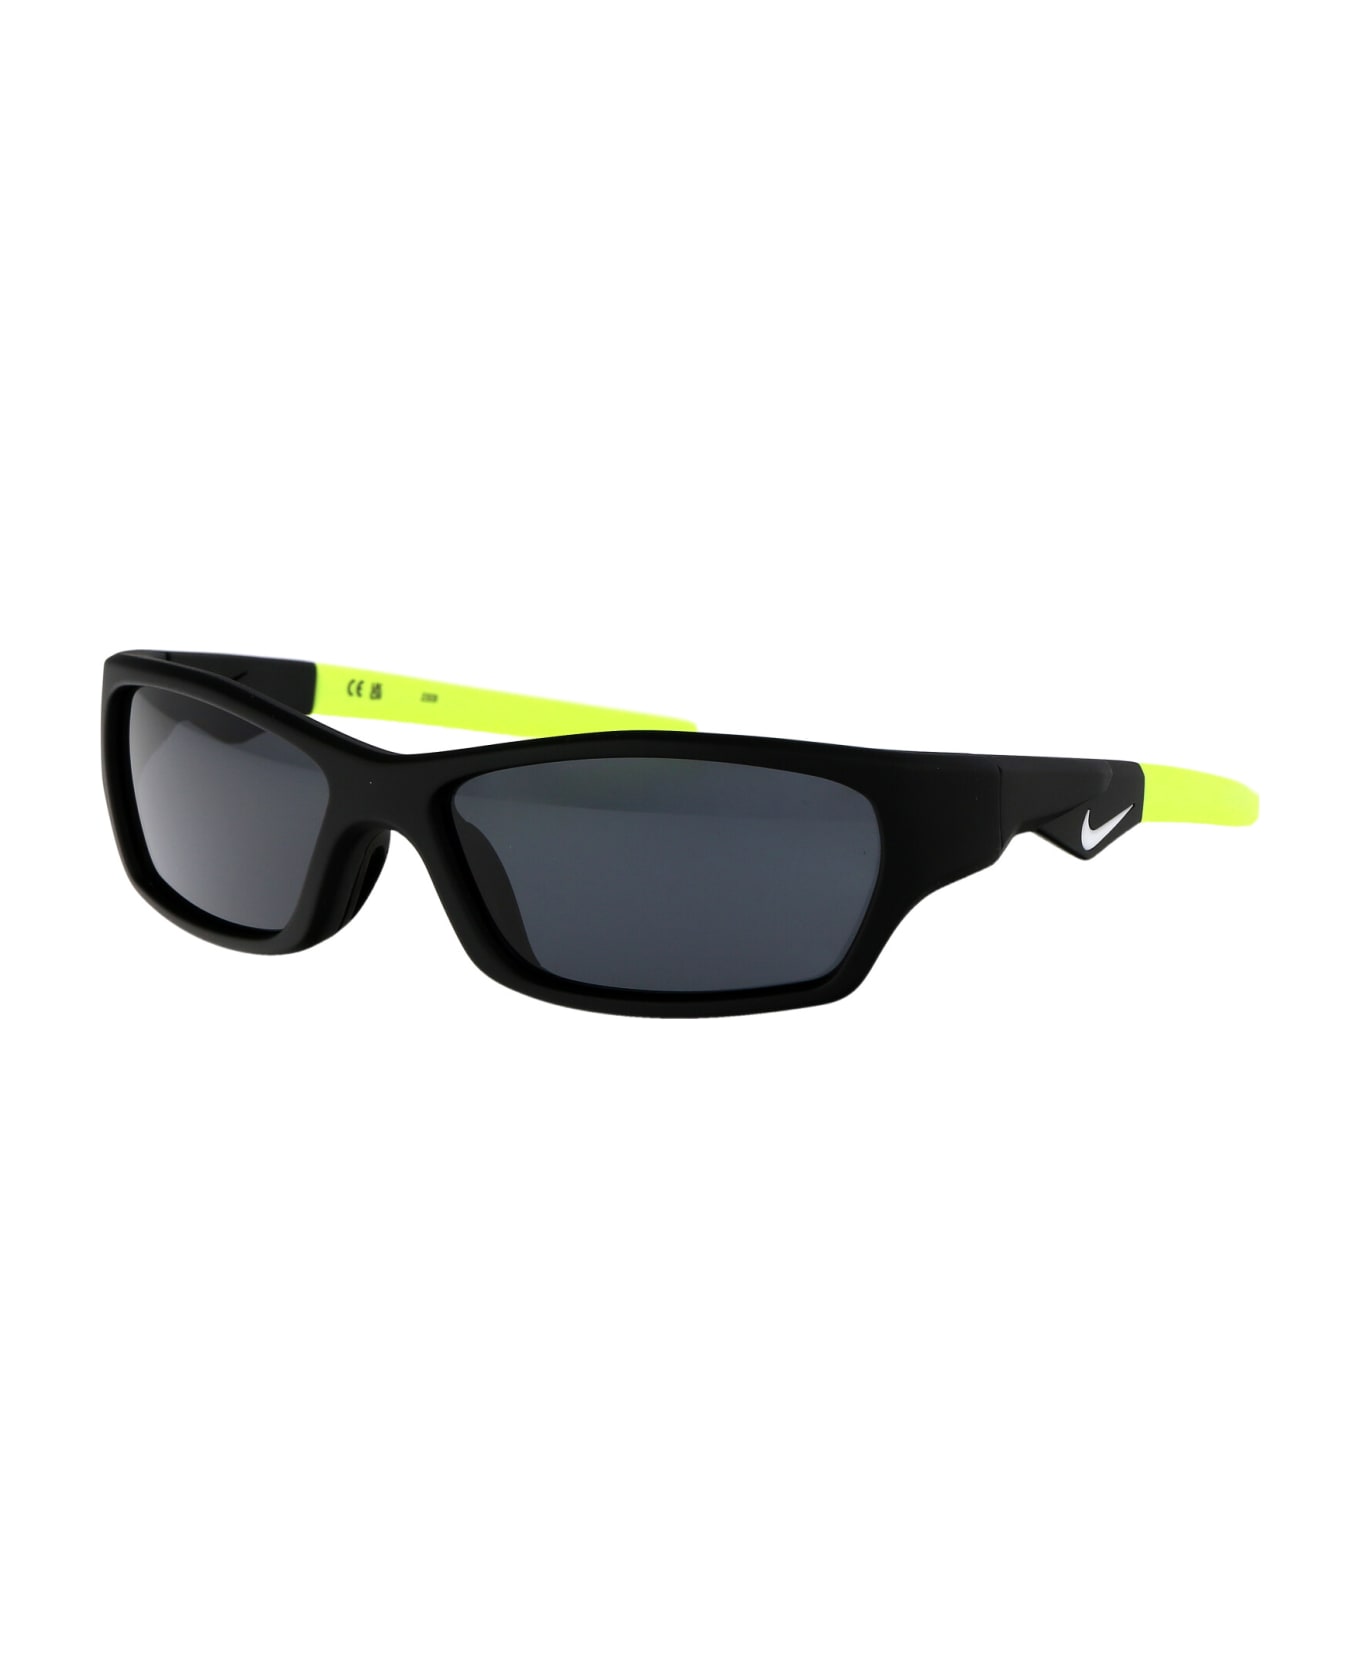 Nike Jolt Sunglasses - 010 MATTE BLACK NOIR MAT